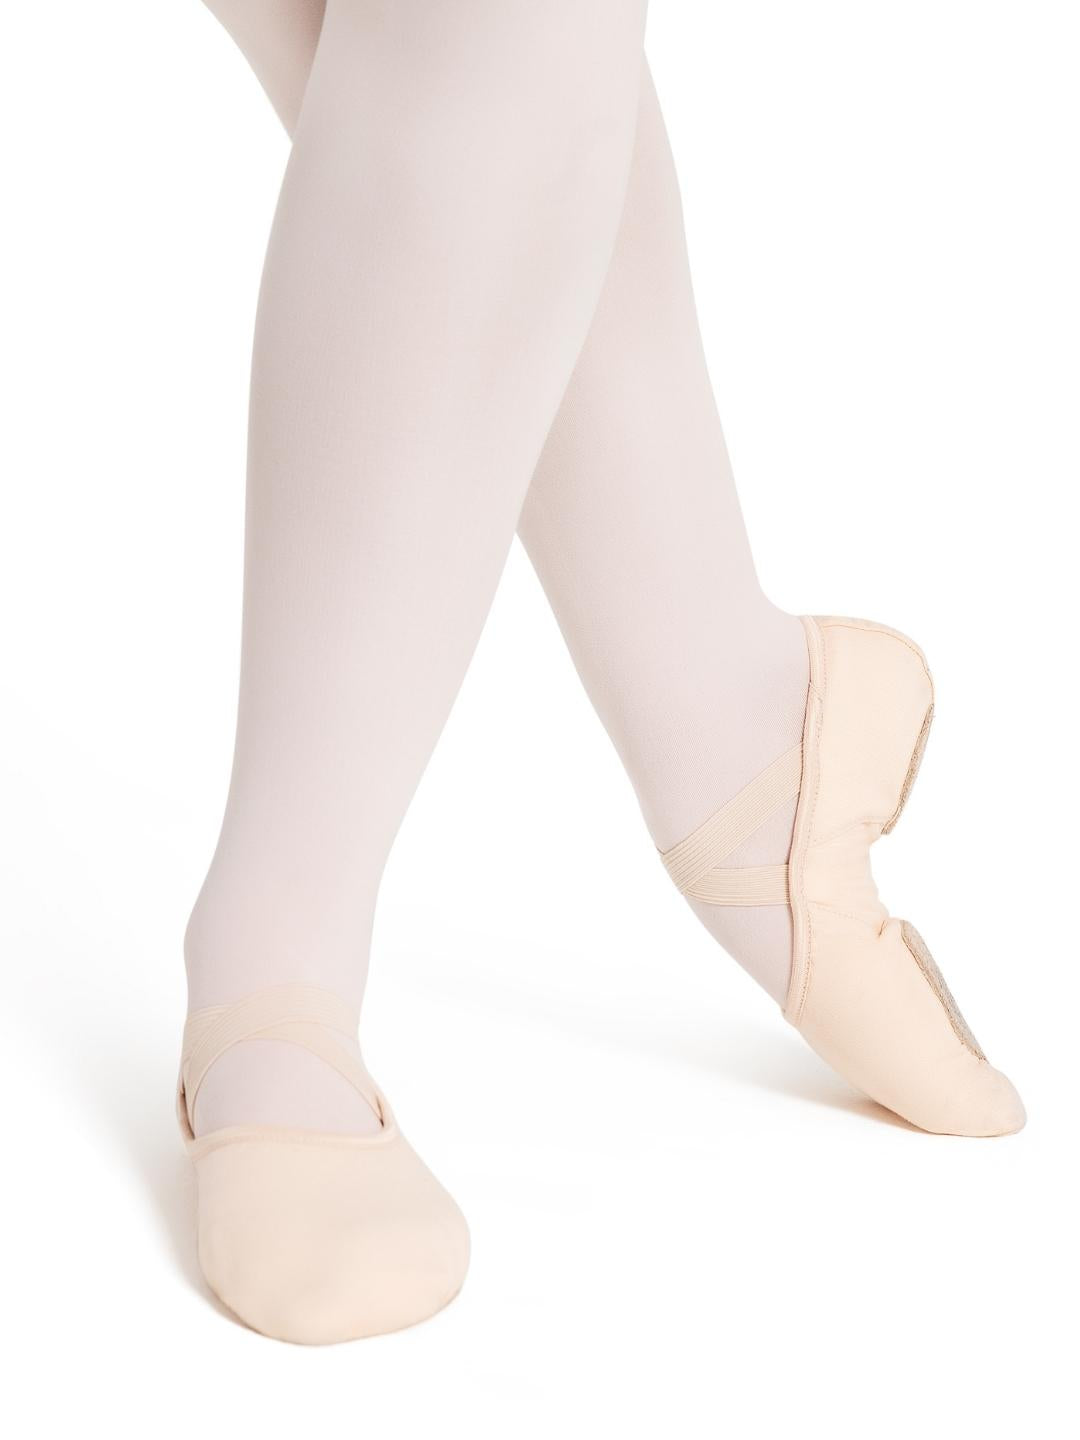 Hanami Canvas Split-Sole Ballet Shoes - Adult - Light Pink